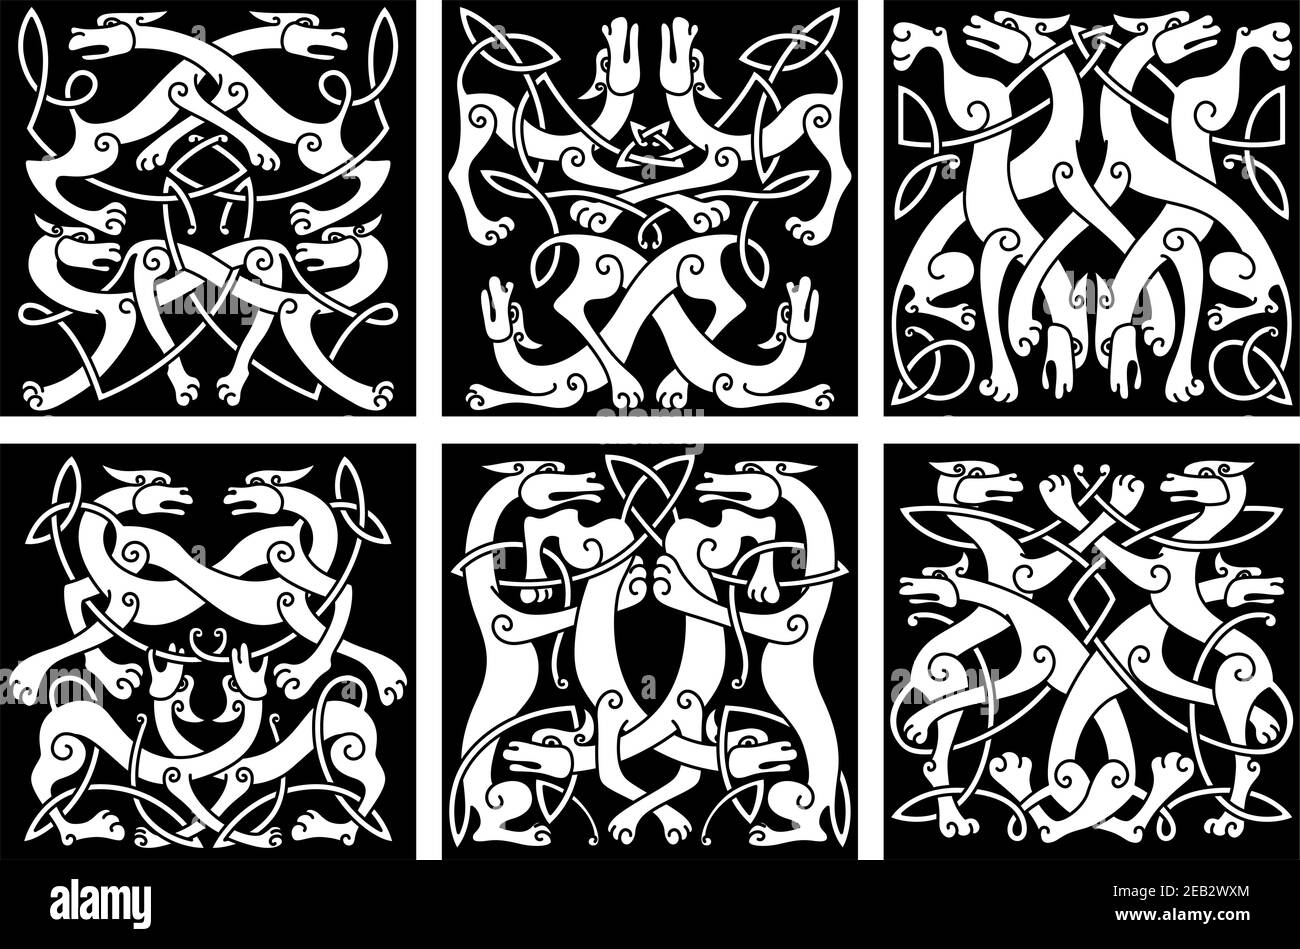 Motivi di nodo animale celtico con lupi o cani da gioco, decorati da ornamenti tribali geometrici, per tatuaggio o stemma araldico Illustrazione Vettoriale